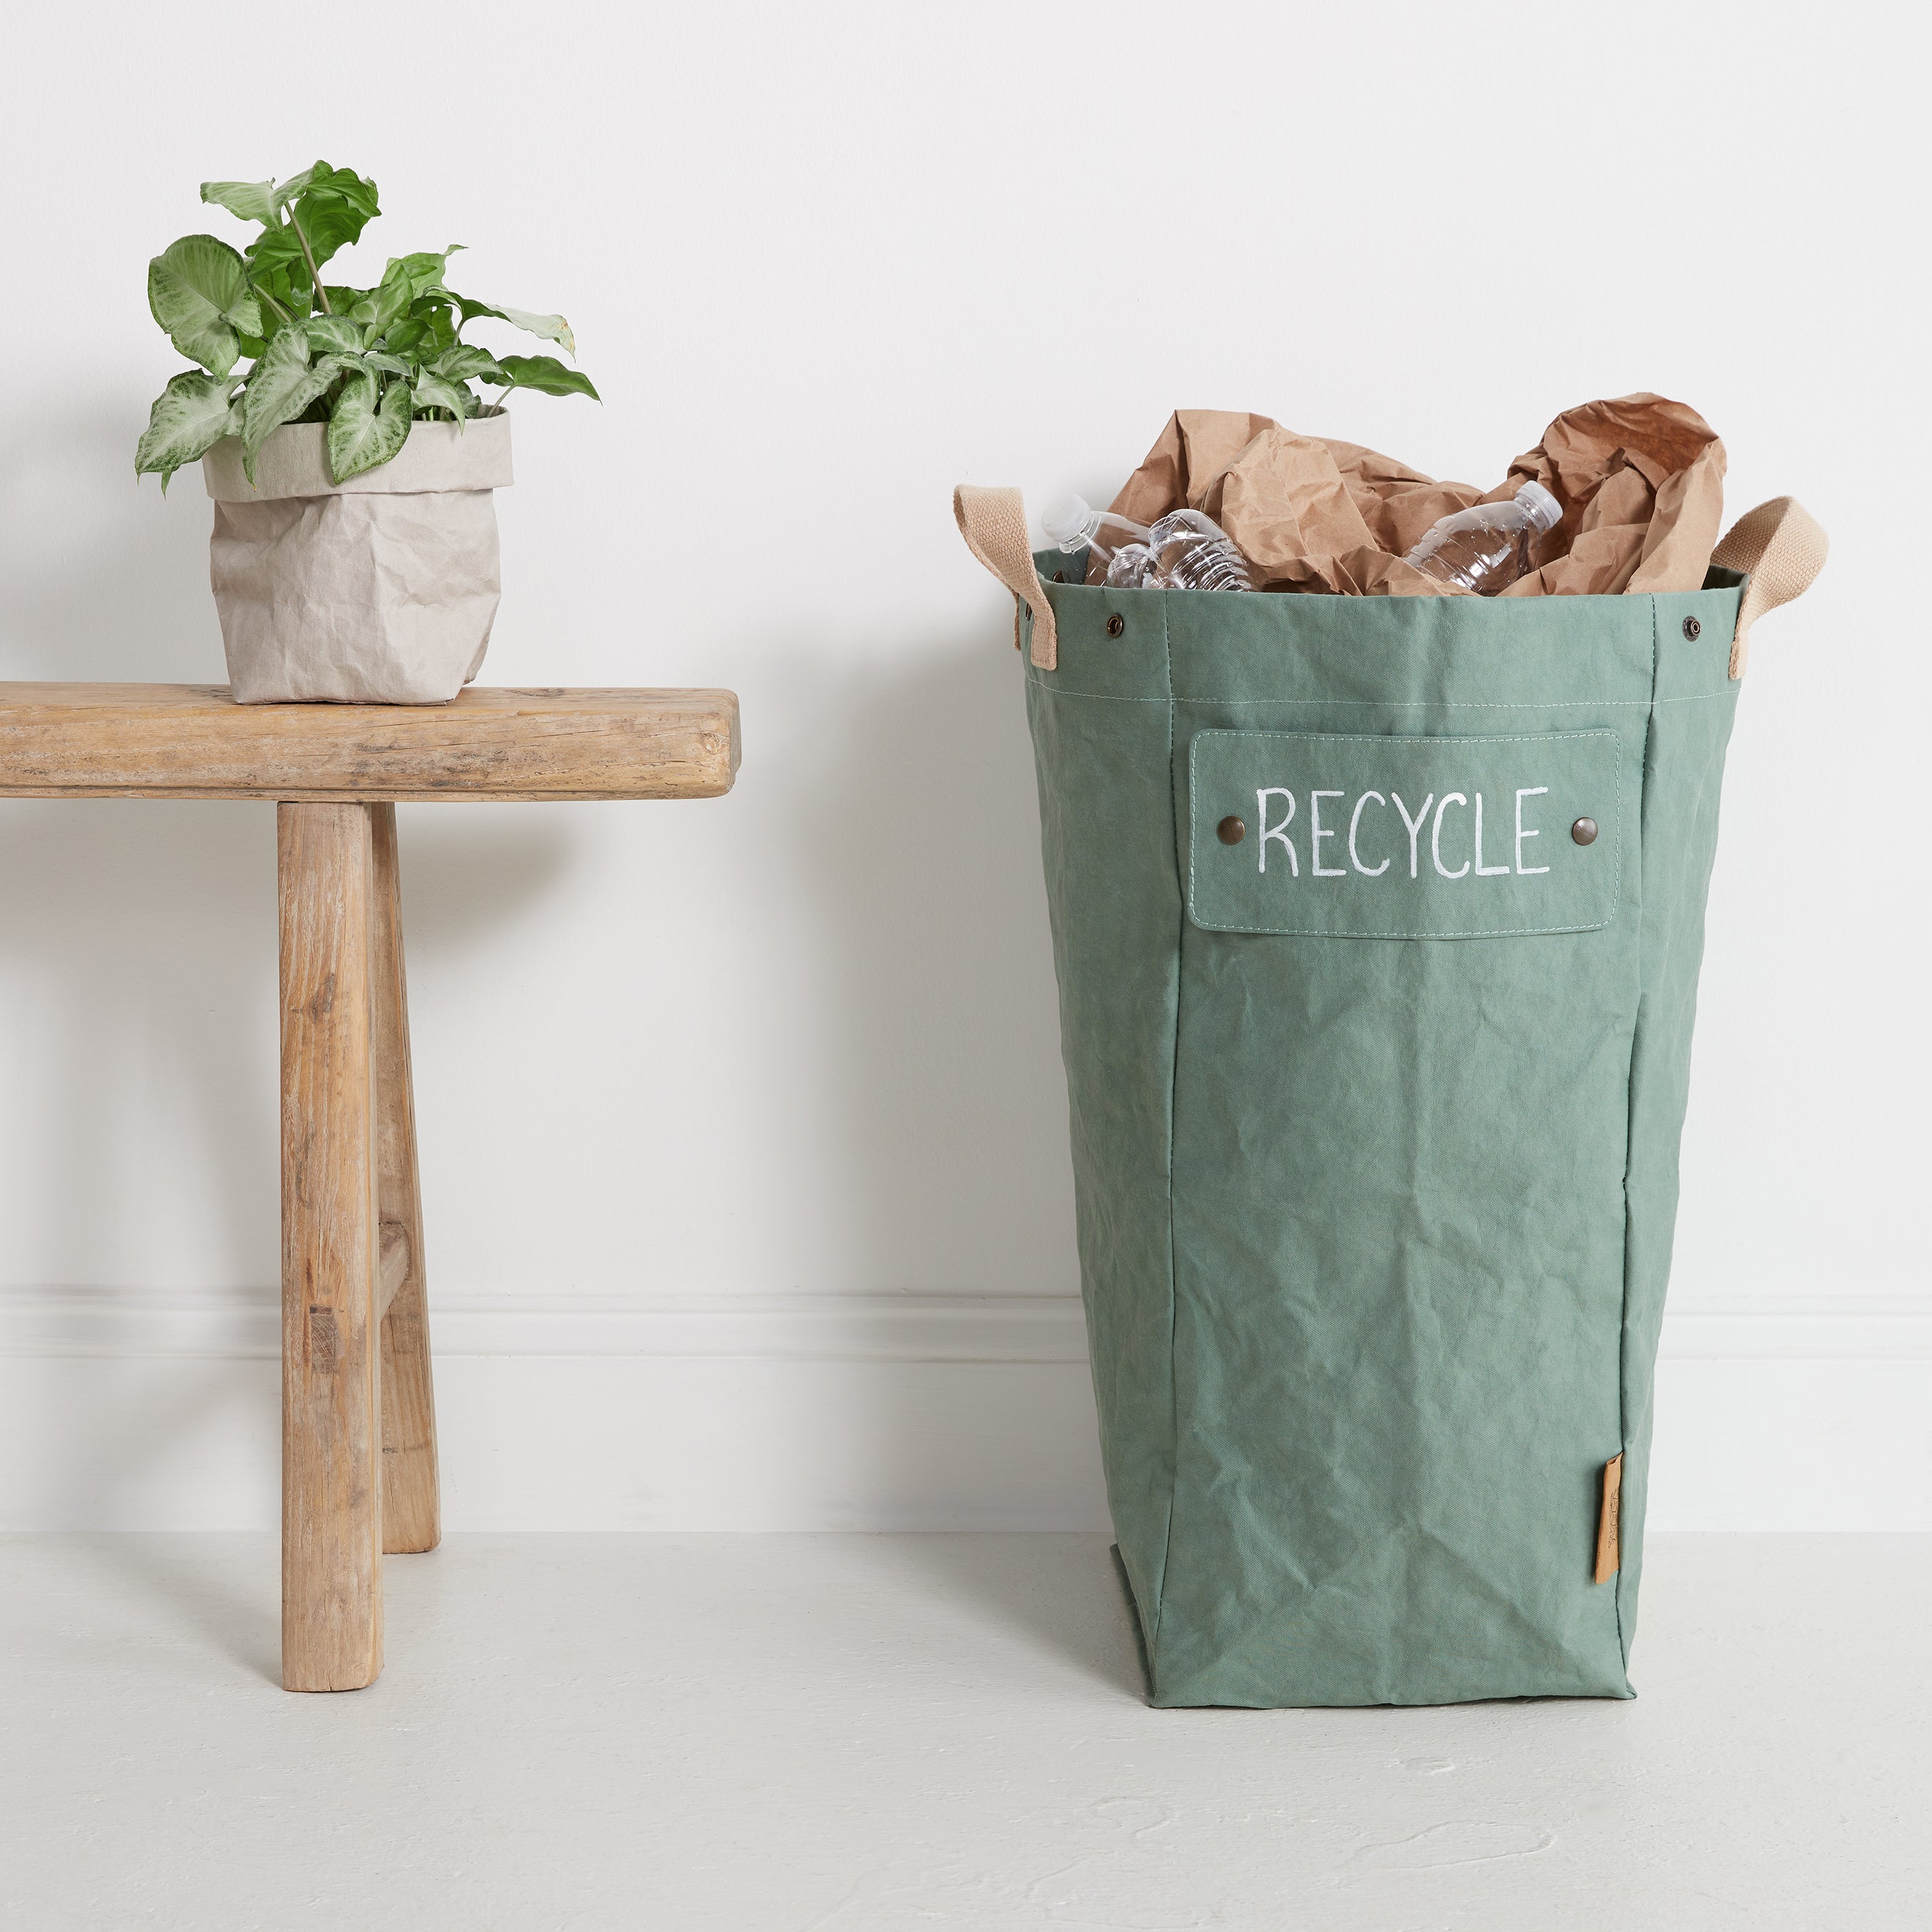 Uashmama Paper Bag Extra Large, Planter/Toys/Laundry